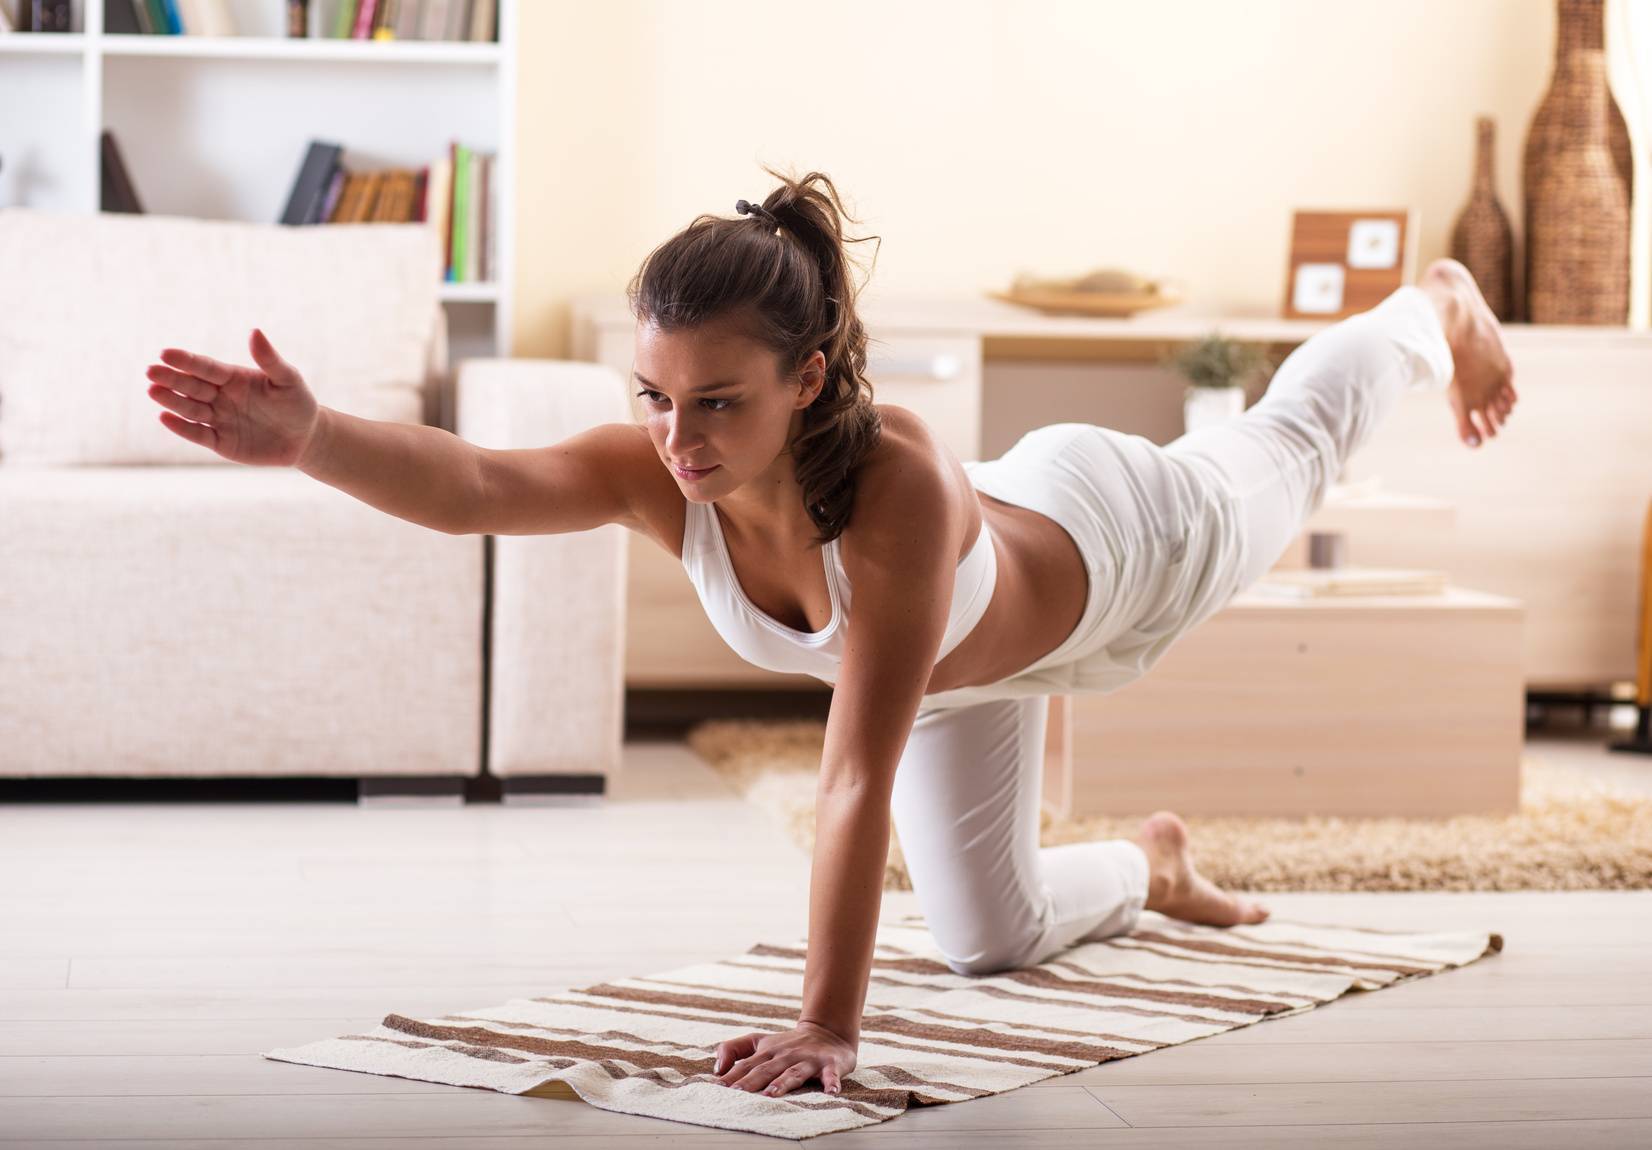 Йога для похудения для начинающих в домашних условиях, помогает ли и как занимаясь получить пользу для фигуры